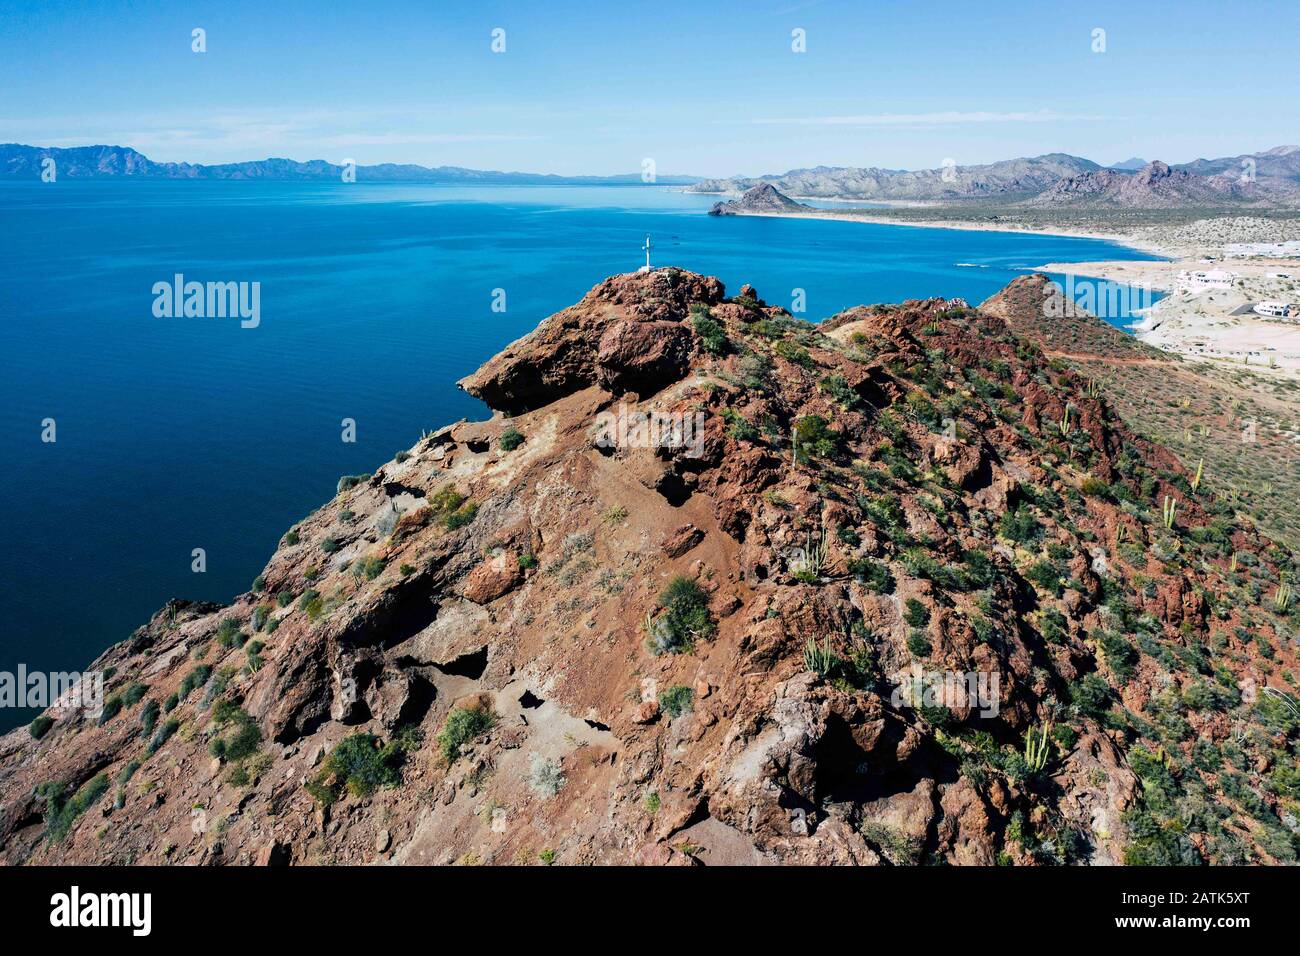 Vista aerea de Kino o bahía de Kino, Sonora, Mex en el golfo de california. playa kino, oceano pacifico, mar de Cortez mar, arena, playa, oceano, dest Stock Photo